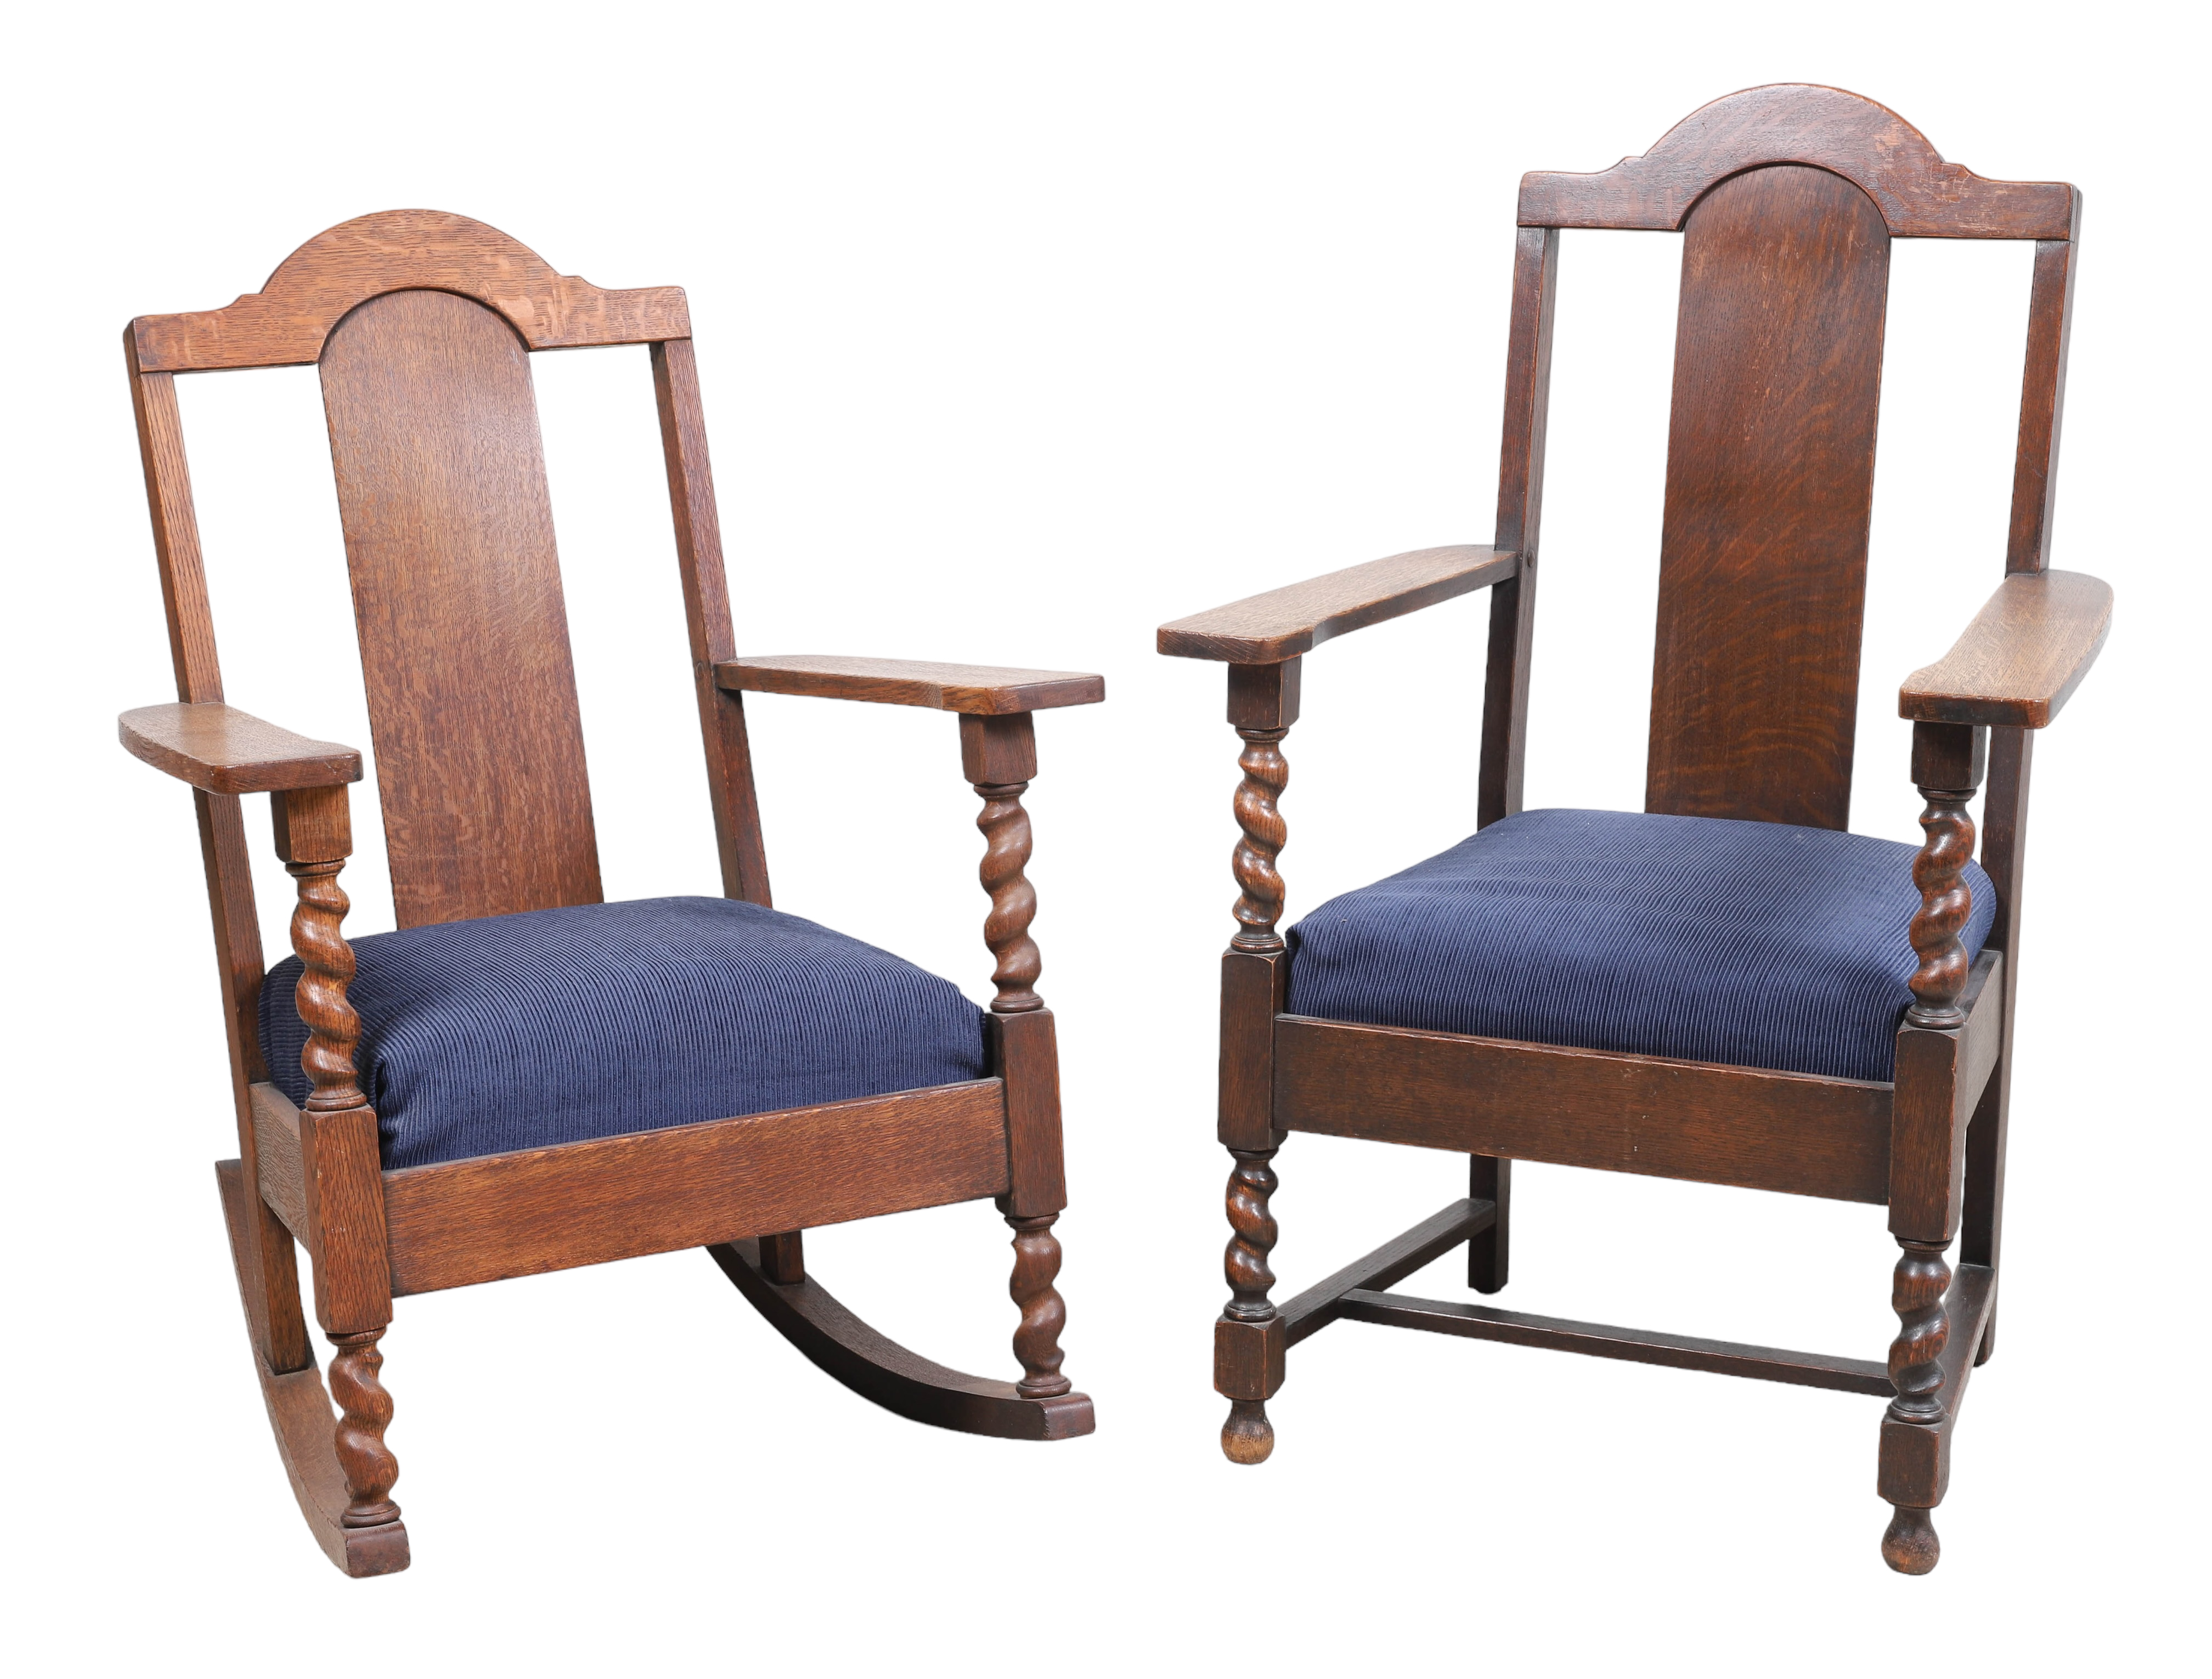  2 Mission style oak chairs c o 2e1fde